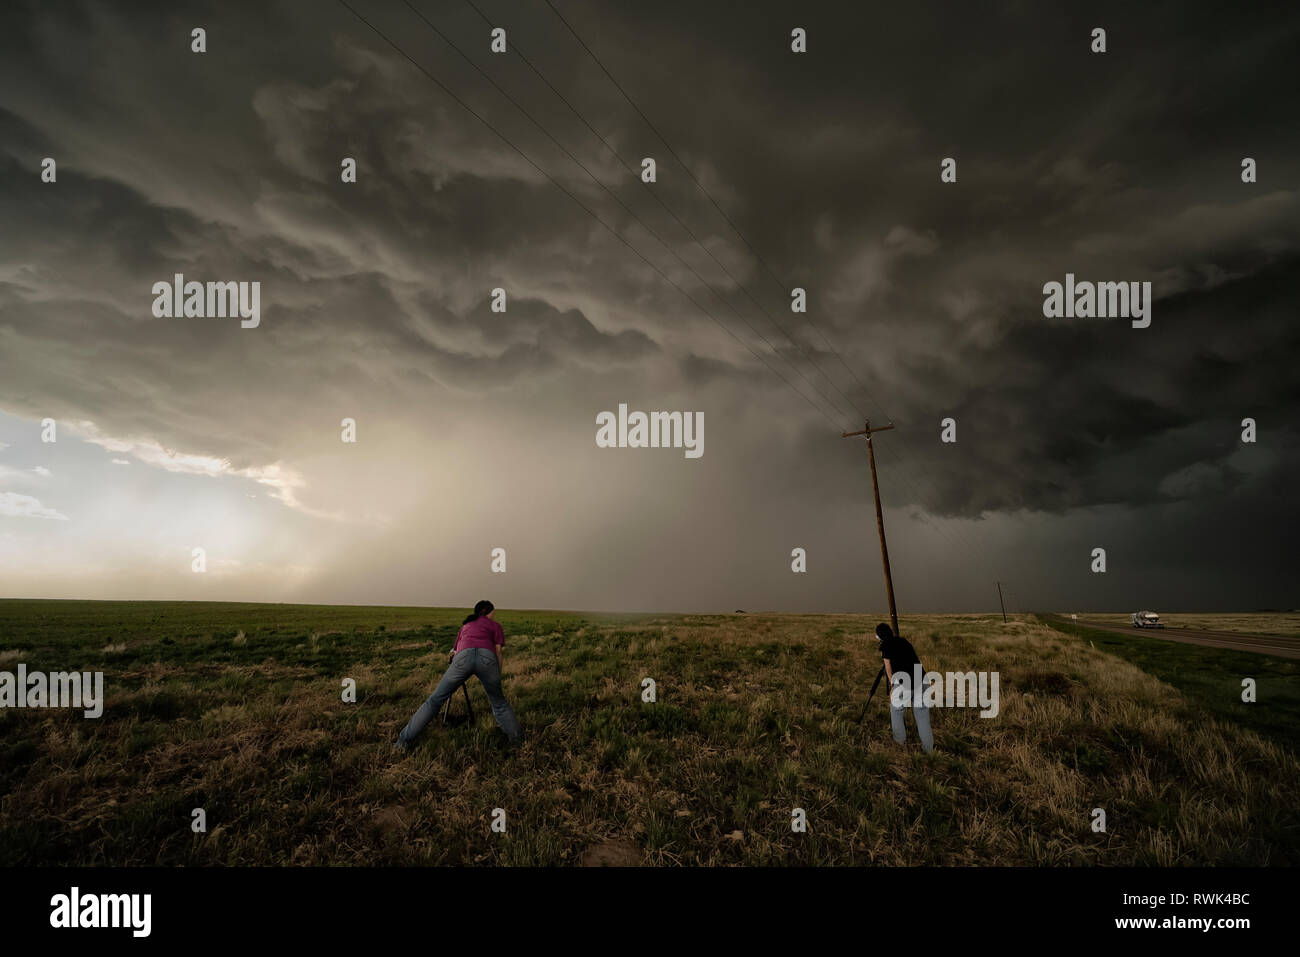 Menschen fotografieren einer superzelle Gewitter während eines Sturms jagen Tour, Oklahoma, Vereinigte Staaten von Amerika Stockfoto